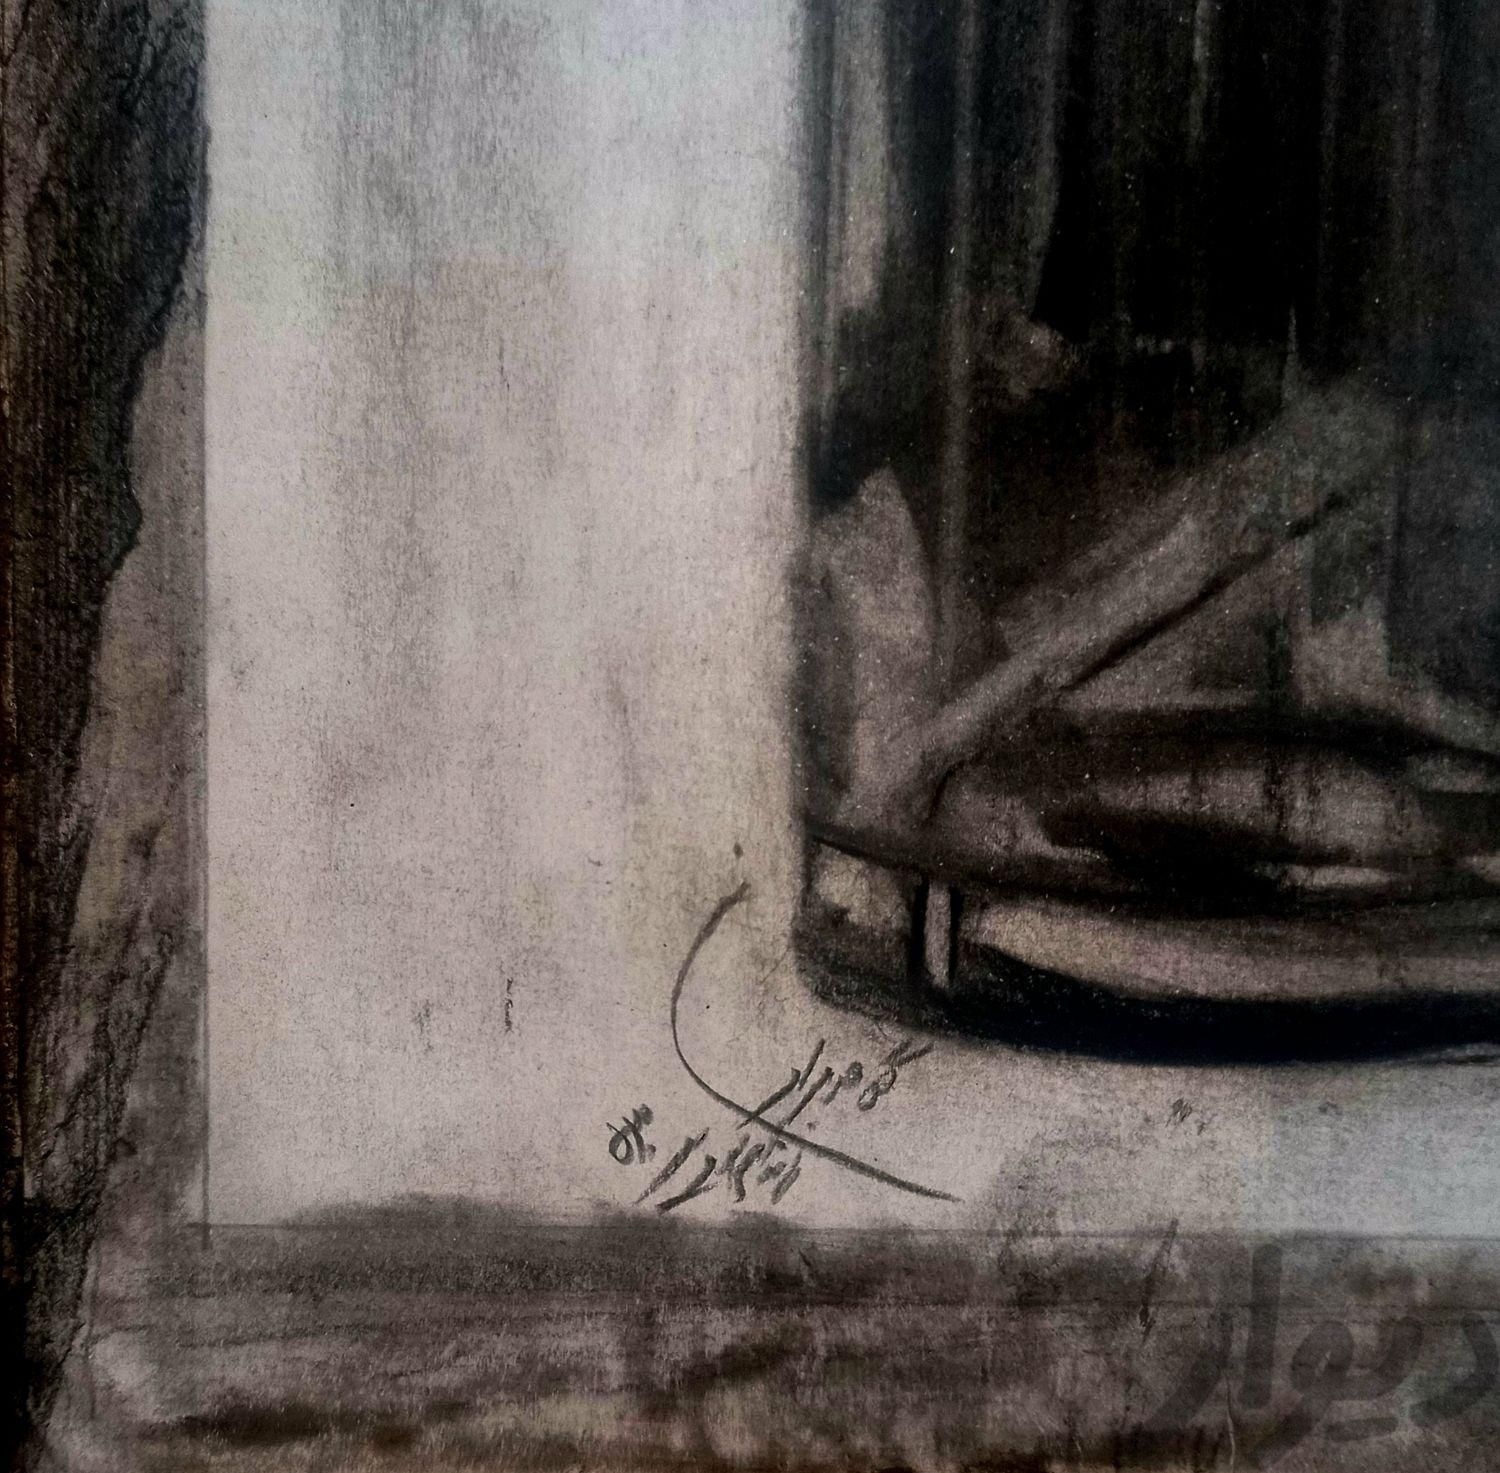 طراحی اثر غلامحسین ساعدی در زندان اوین 1353|تابلو، نقاشی و عکس|تهران, ظفر|دیوار